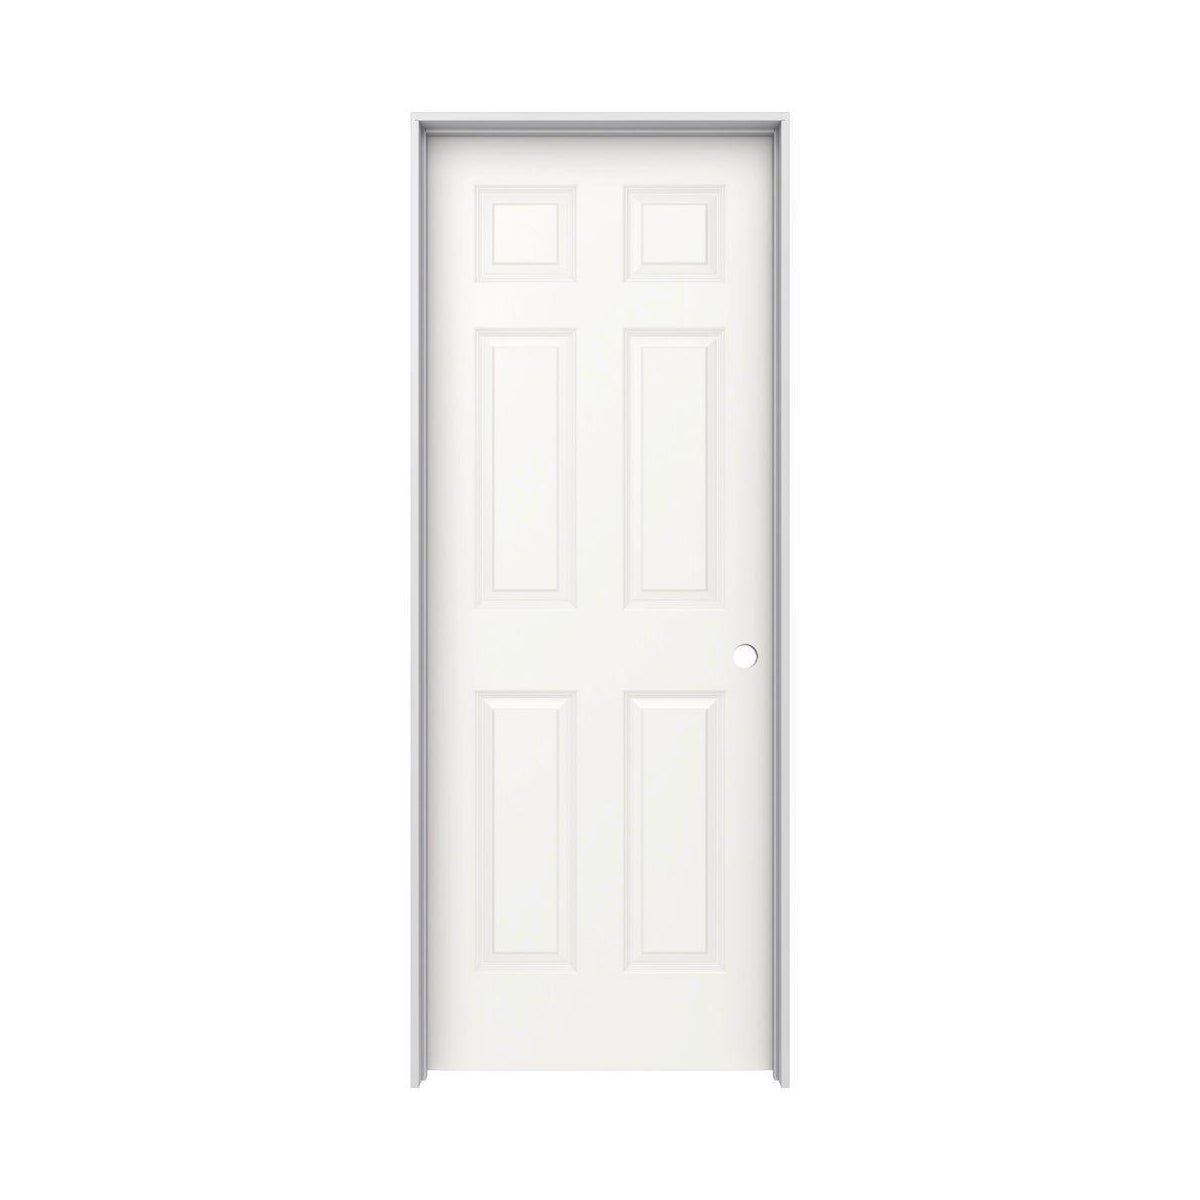 DOOR-LEFT-30"-6 PANEL-PRE-HUNG-4-1/2" JAMB